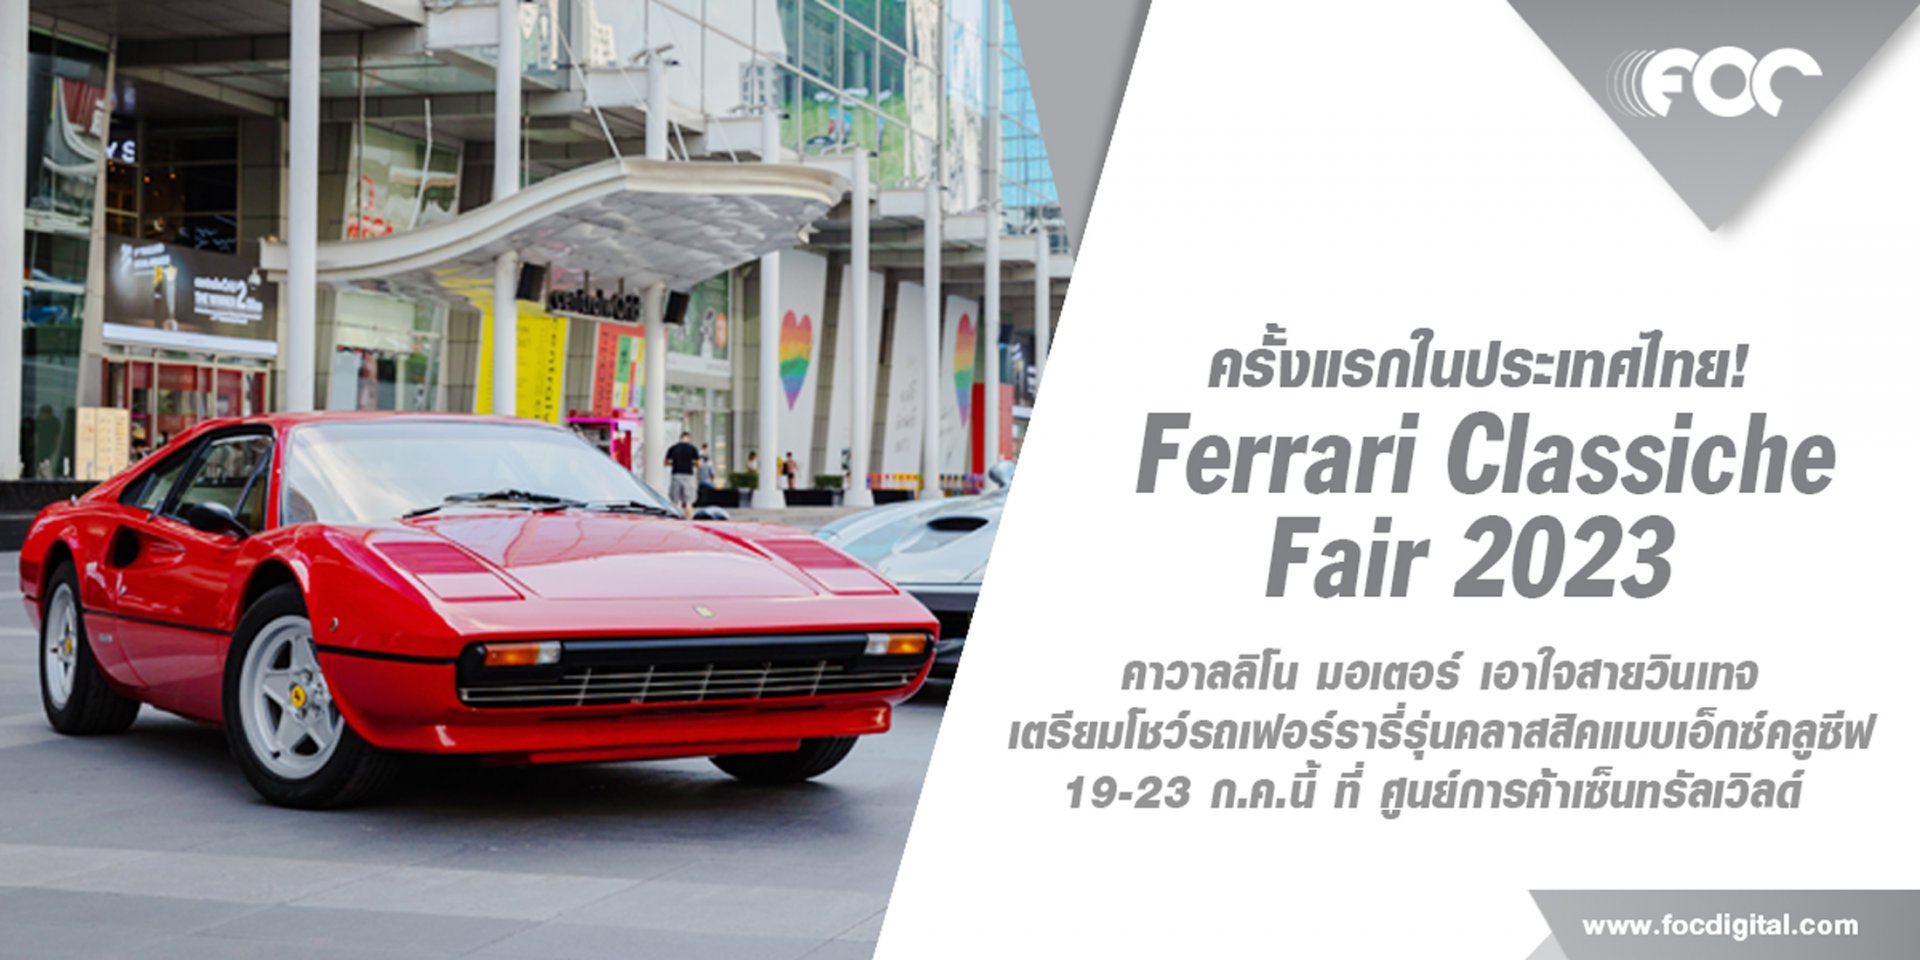 ครั้งแรกในประเทศไทย! คาวาลลิโน มอเตอร์ เอาใจสายวินเทจ  เตรียมโชว์รถเฟอร์รารี่รุ่นคลาสสิคแบบเอ็กซ์คลูซีฟ มูลค่ารวมกว่า 350 ล้านบาท ในงาน “Ferrari Classiche Fair 2023” 